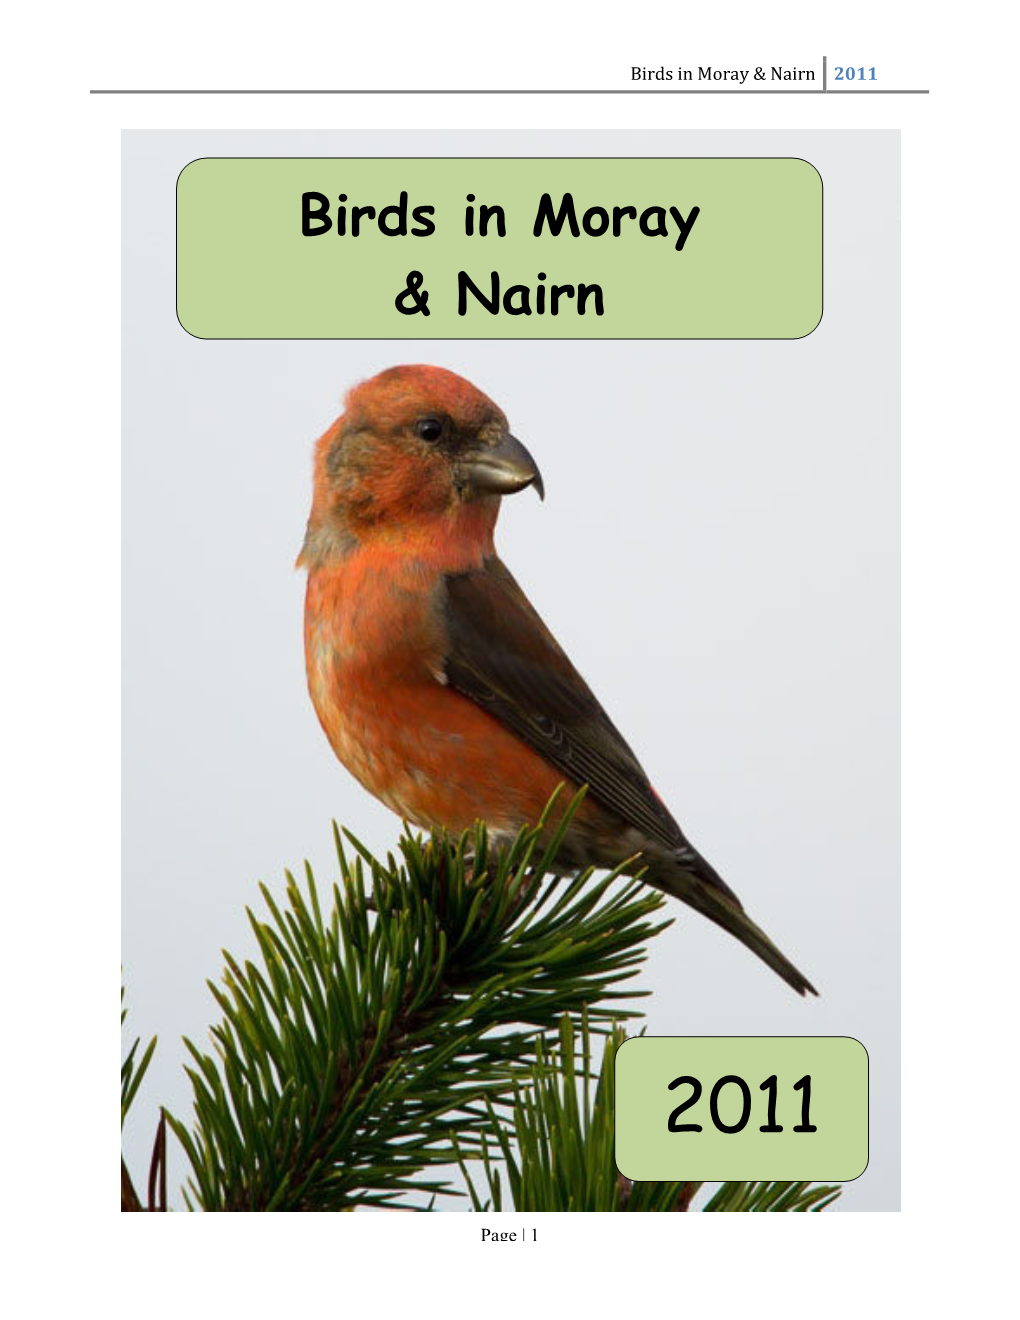 Birds in Moray & Nairn in 2011